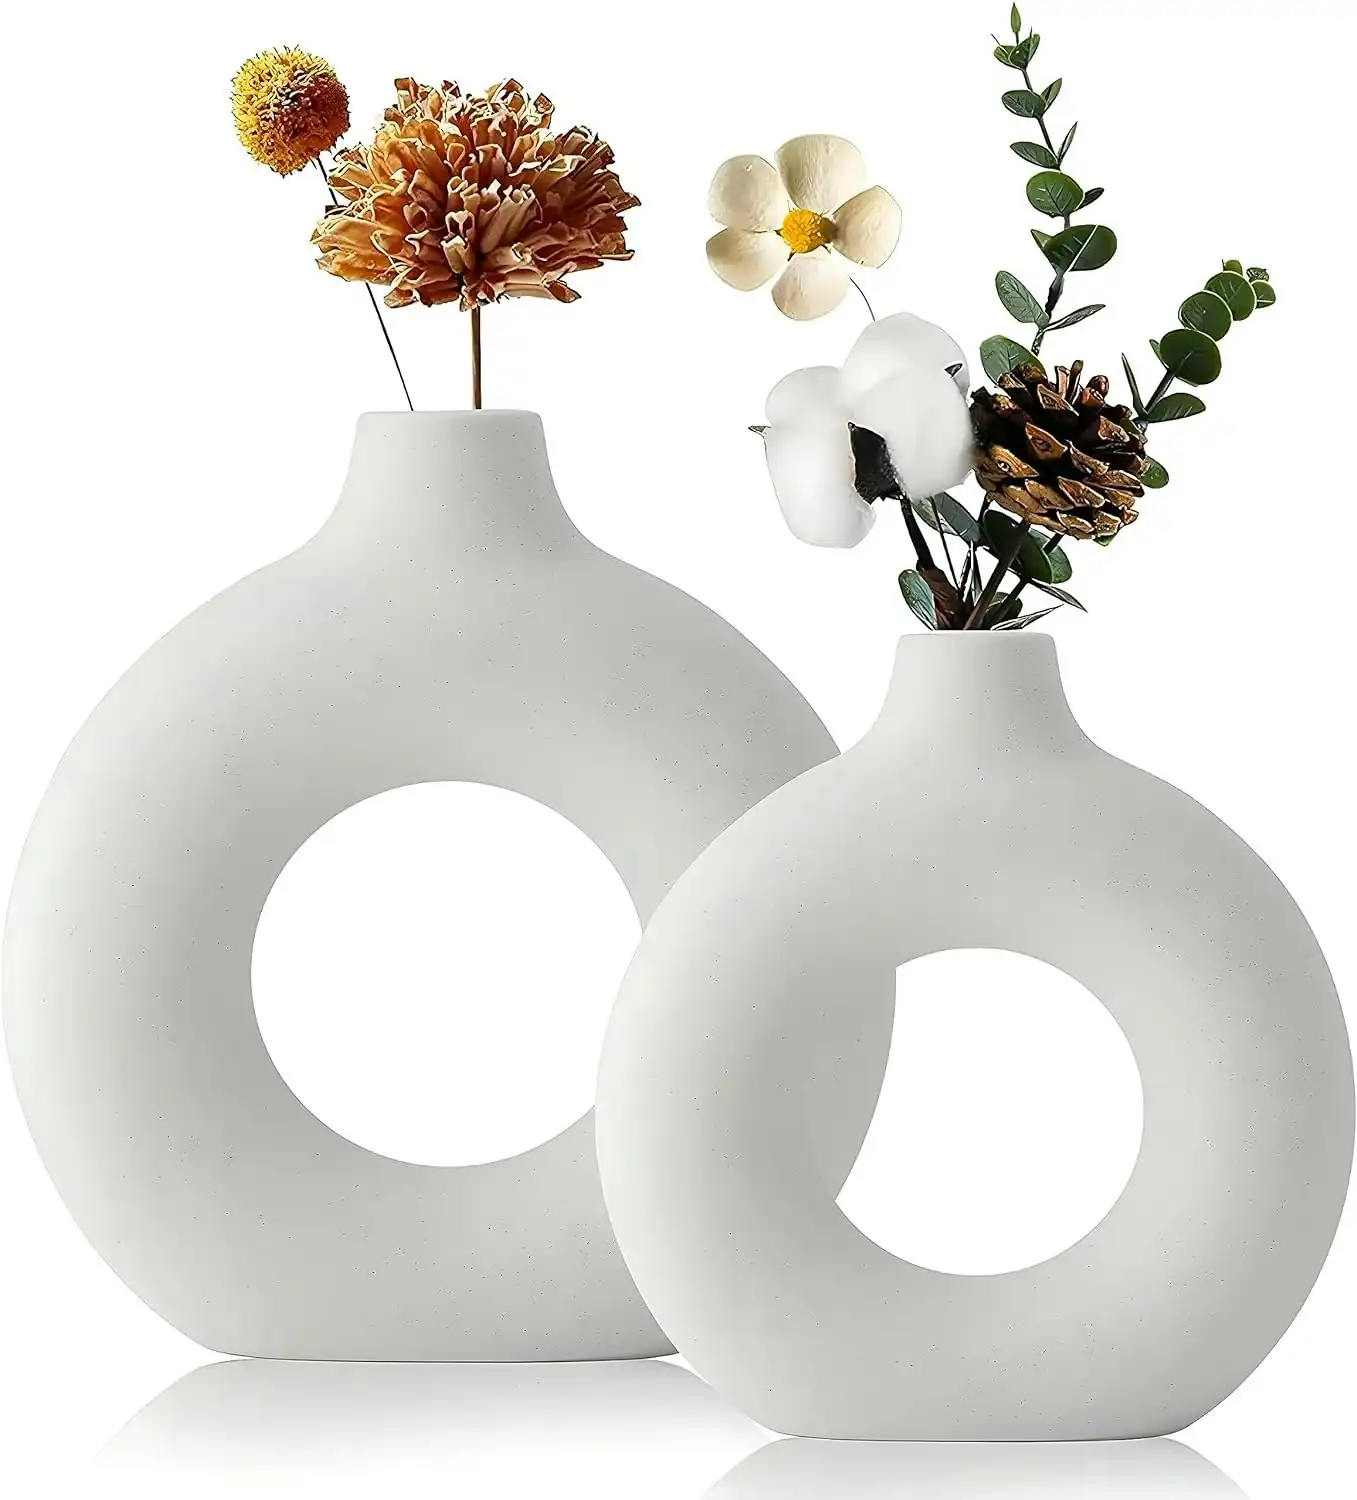 Ceramic Set of 2 Creative Round White Vases for Home DÃƒÂ©cor